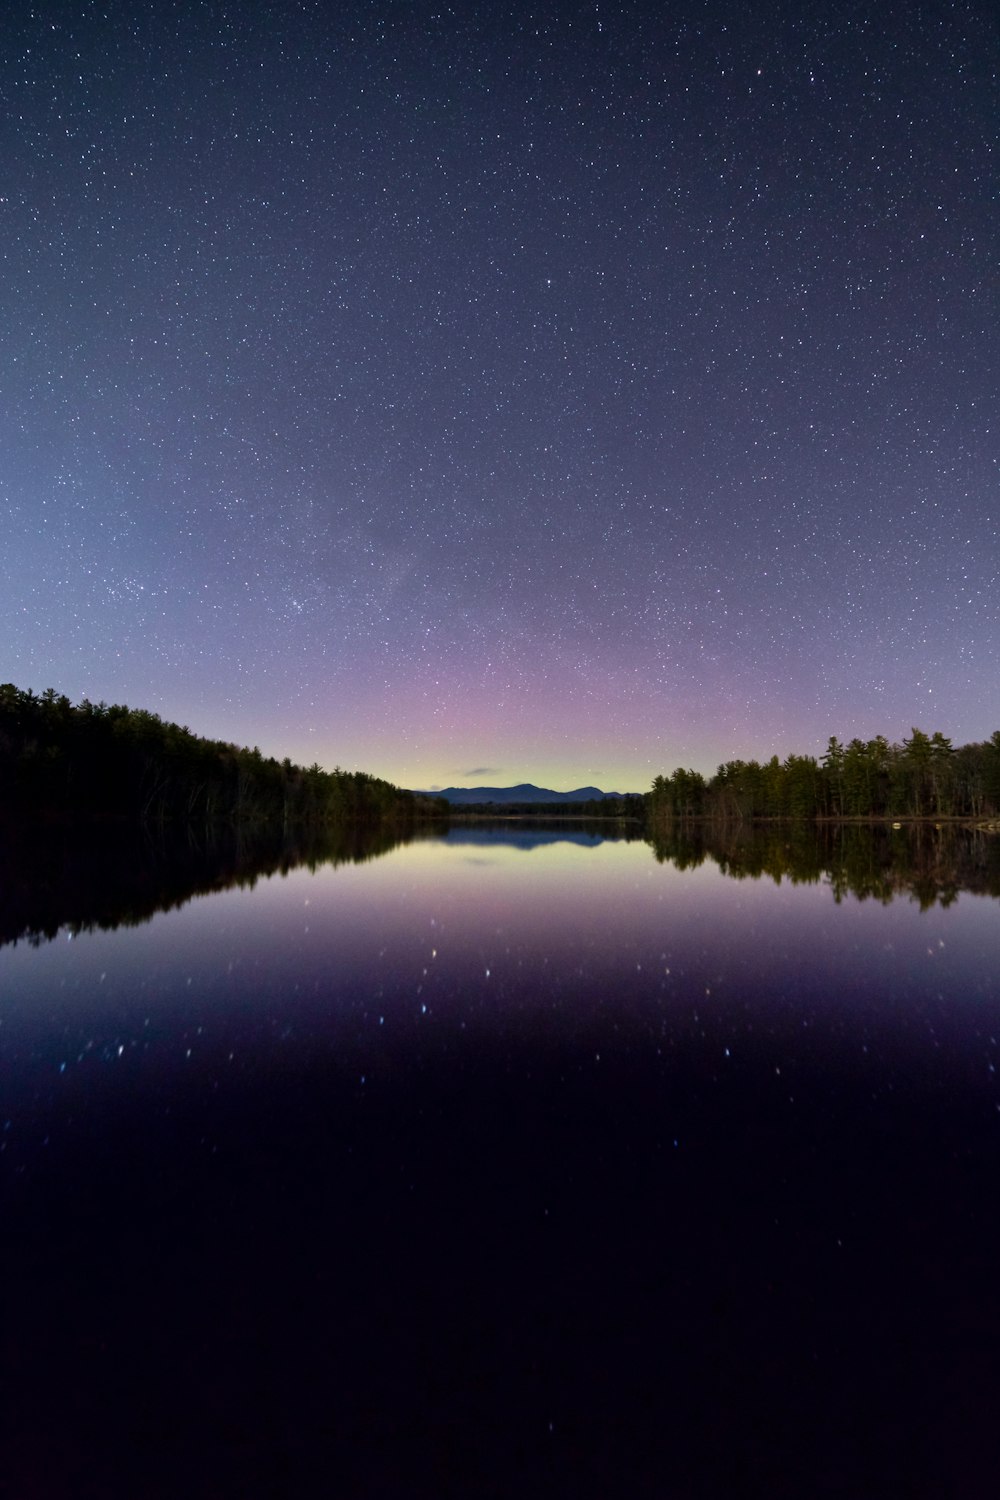 Fotografía de reflexión de la estrella y el cielo bajo un cuerpo de agua tranquilo